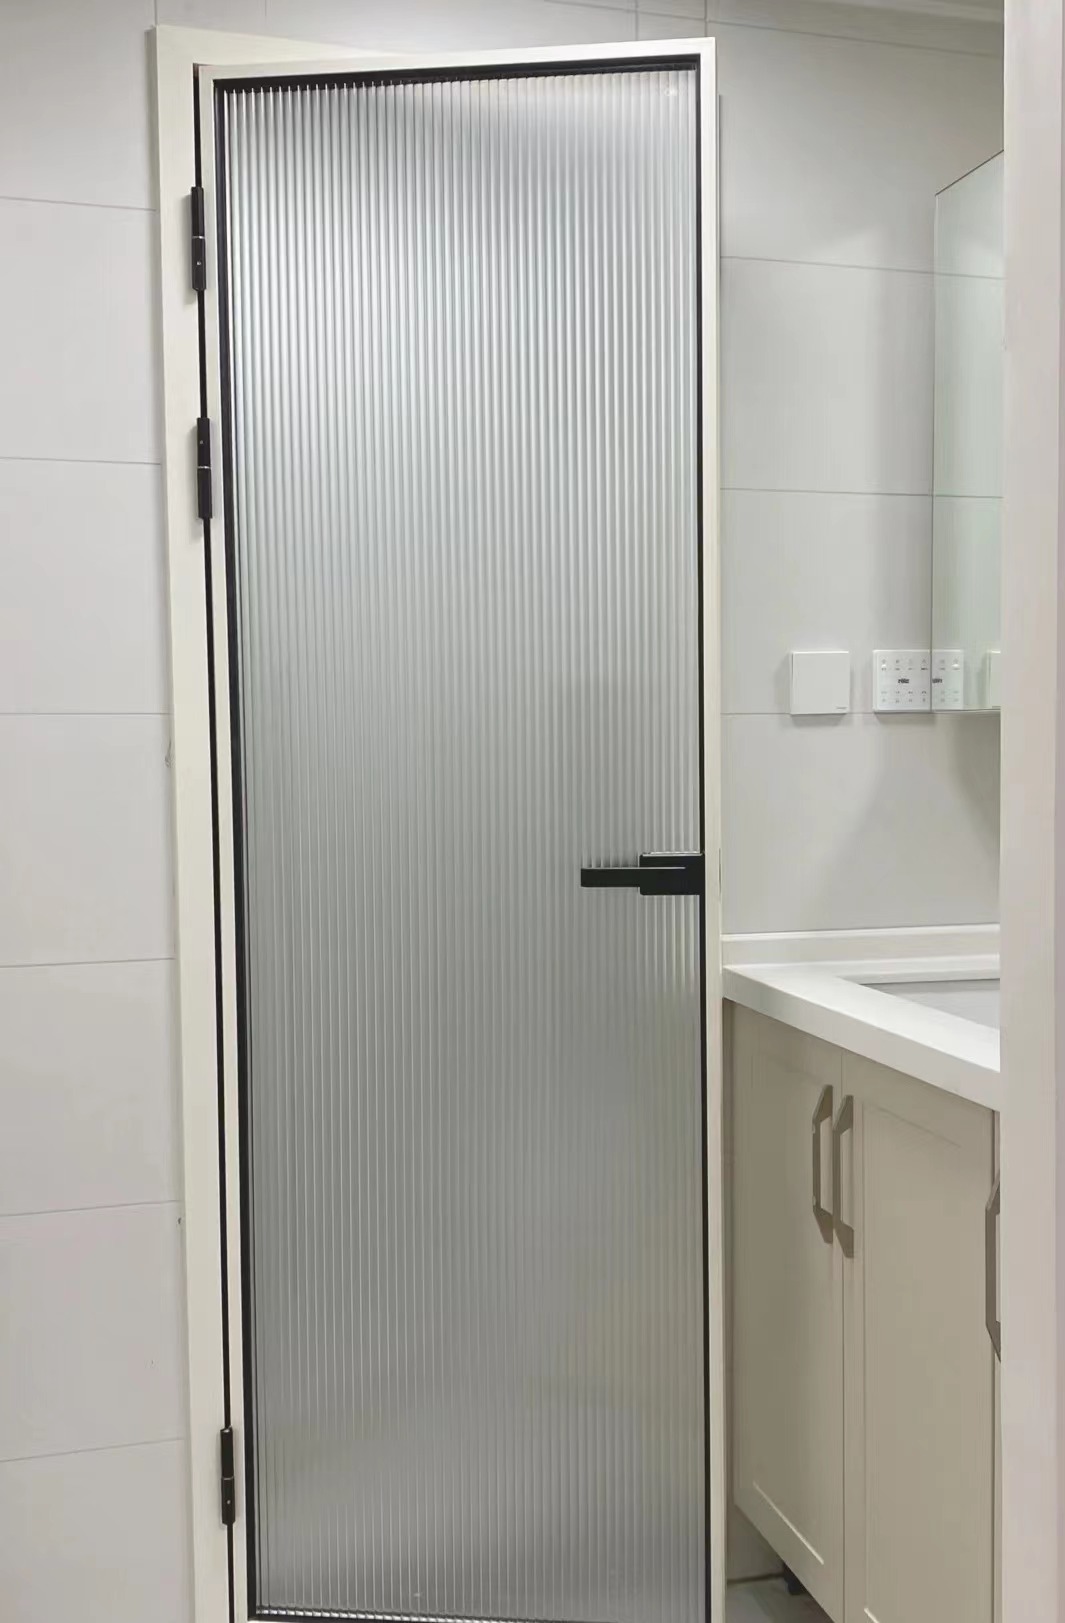 卫浴门如何安装,卫浴门安装有讲究,可不要随意安装!